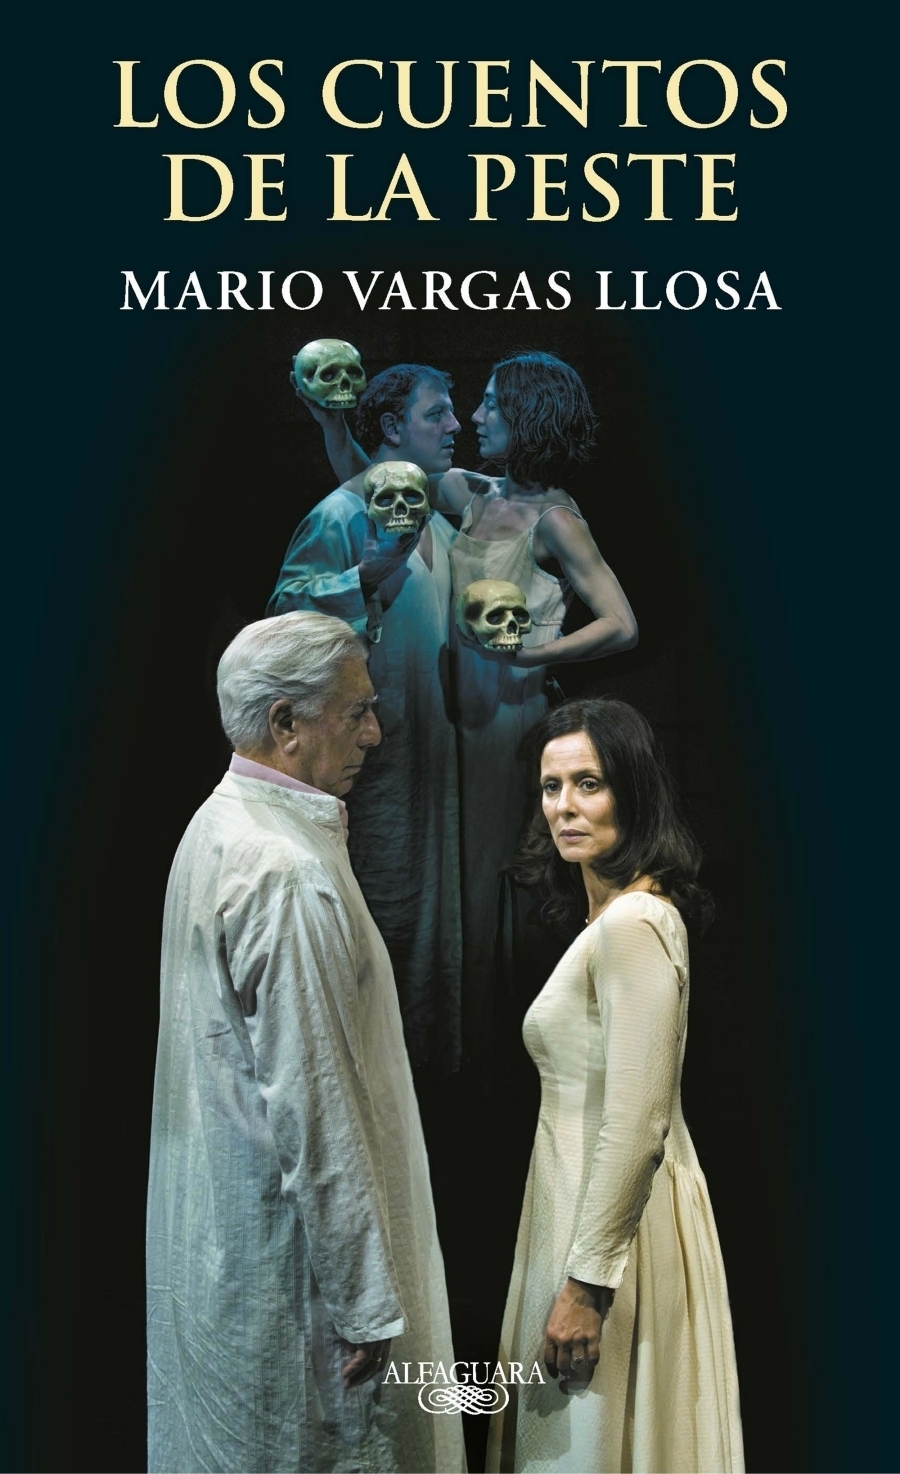 imagen de Mario Vargas Llosa